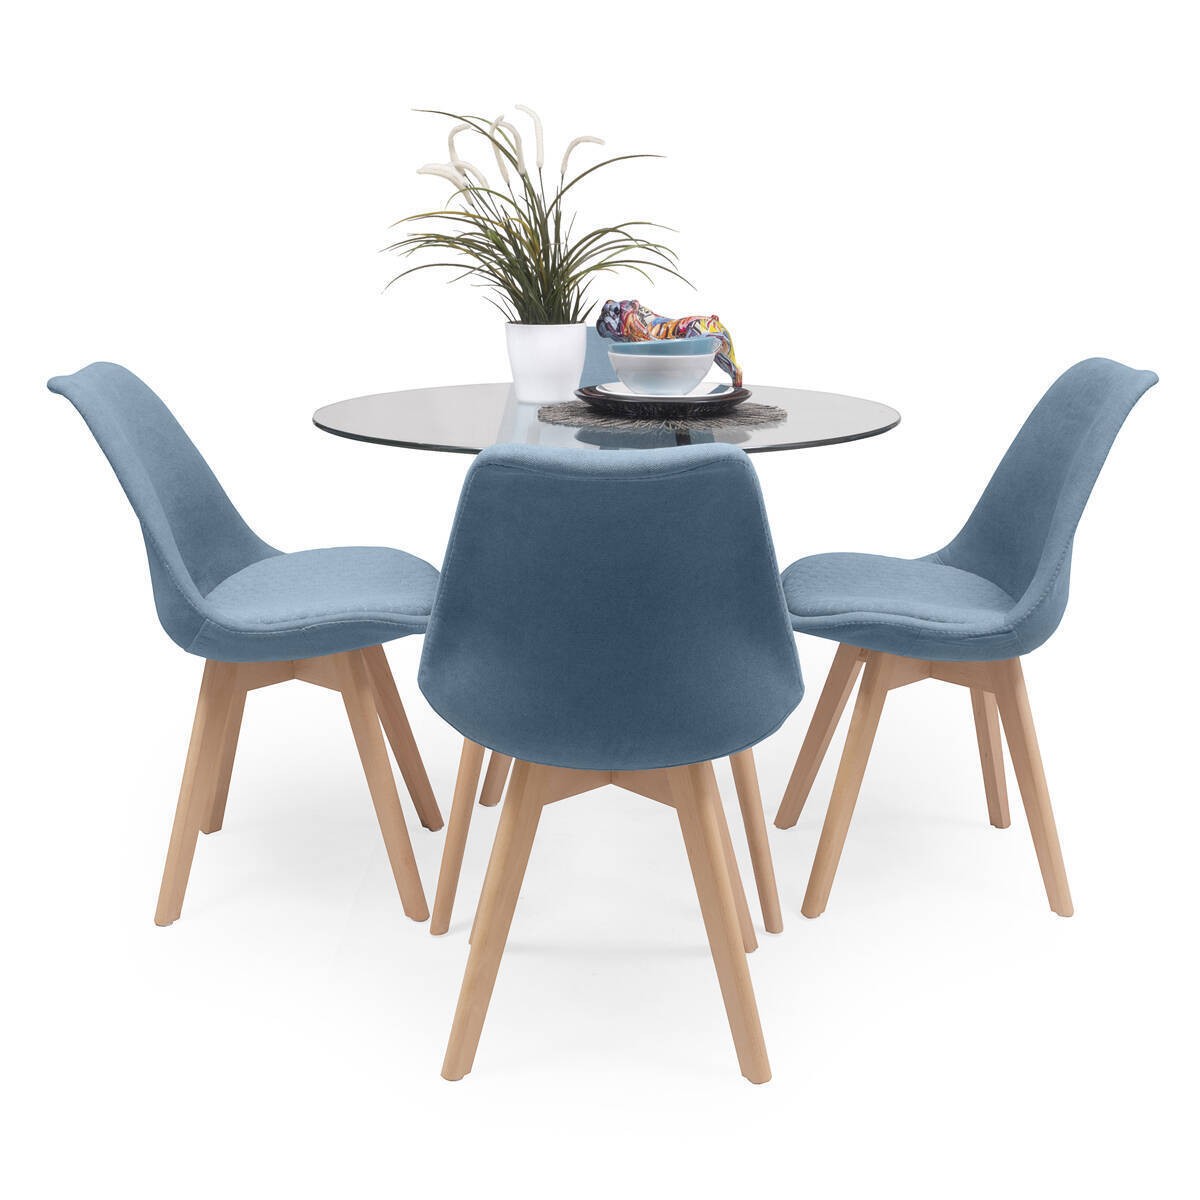 Conjunto mesa redonda 106cm y 4 sillas comedor